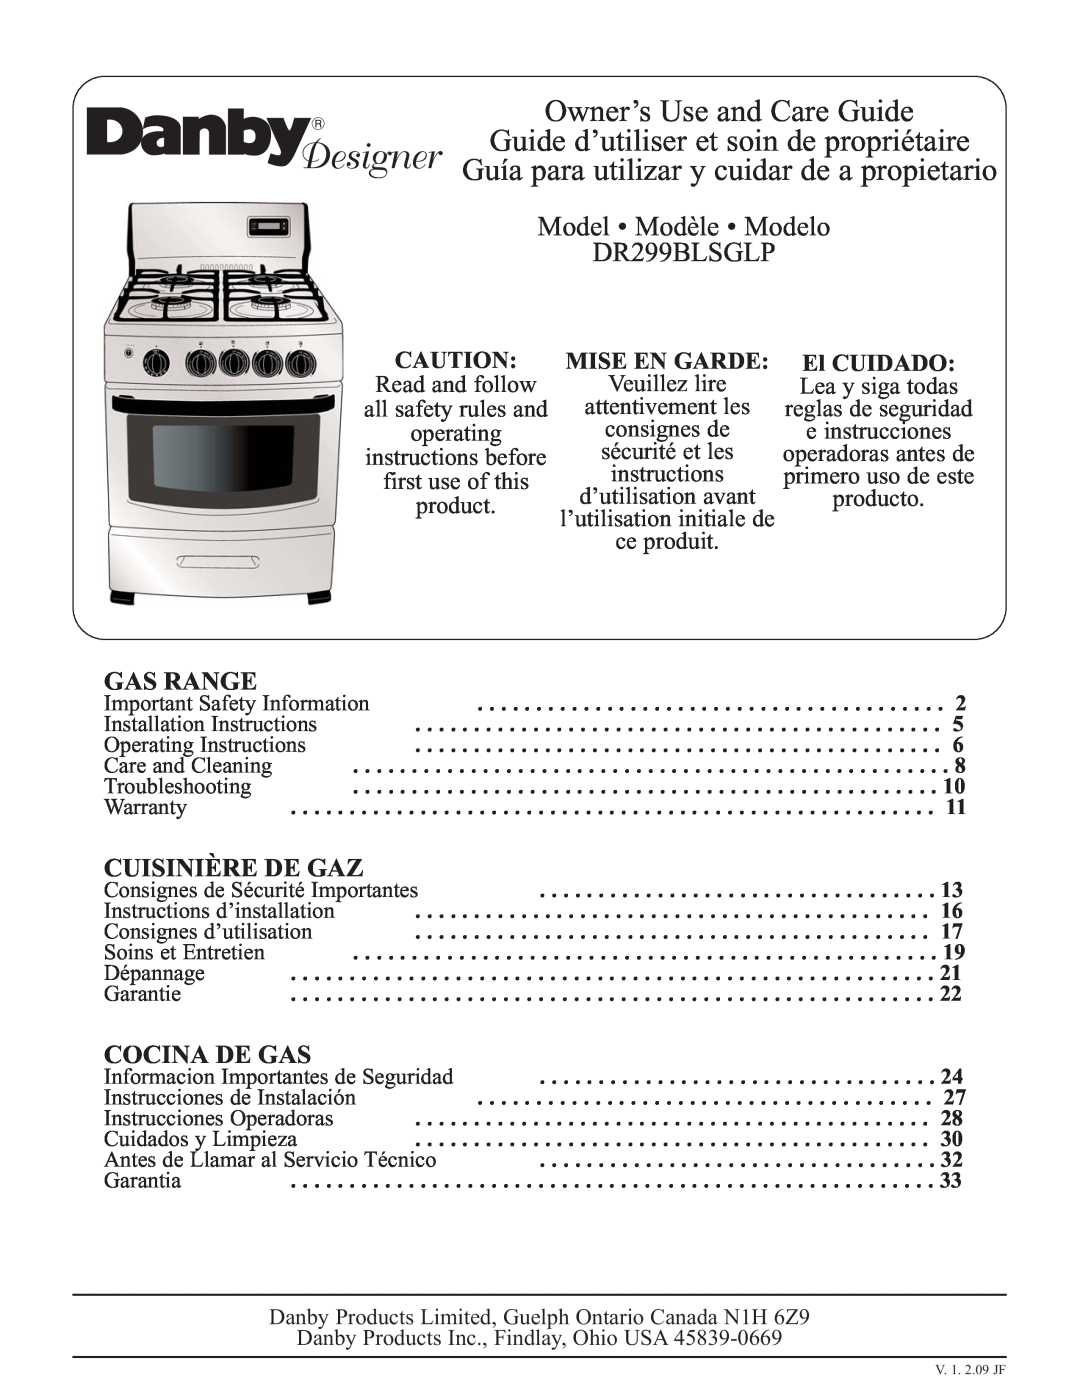 Danby DR299BLSGLP installation instructions Gas Range, Cuisinière De Gaz, Cocina De Gas, Mise En Garde, El CUIDADO 